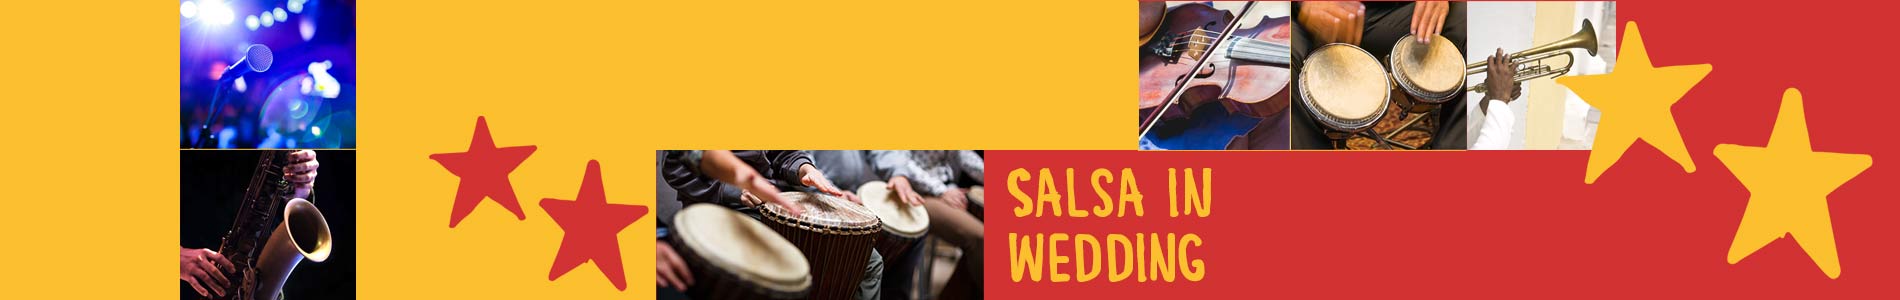 Salsa in Wedding – Salsa lernen und tanzen, Tanzkurse, Partys, Veranstaltungen